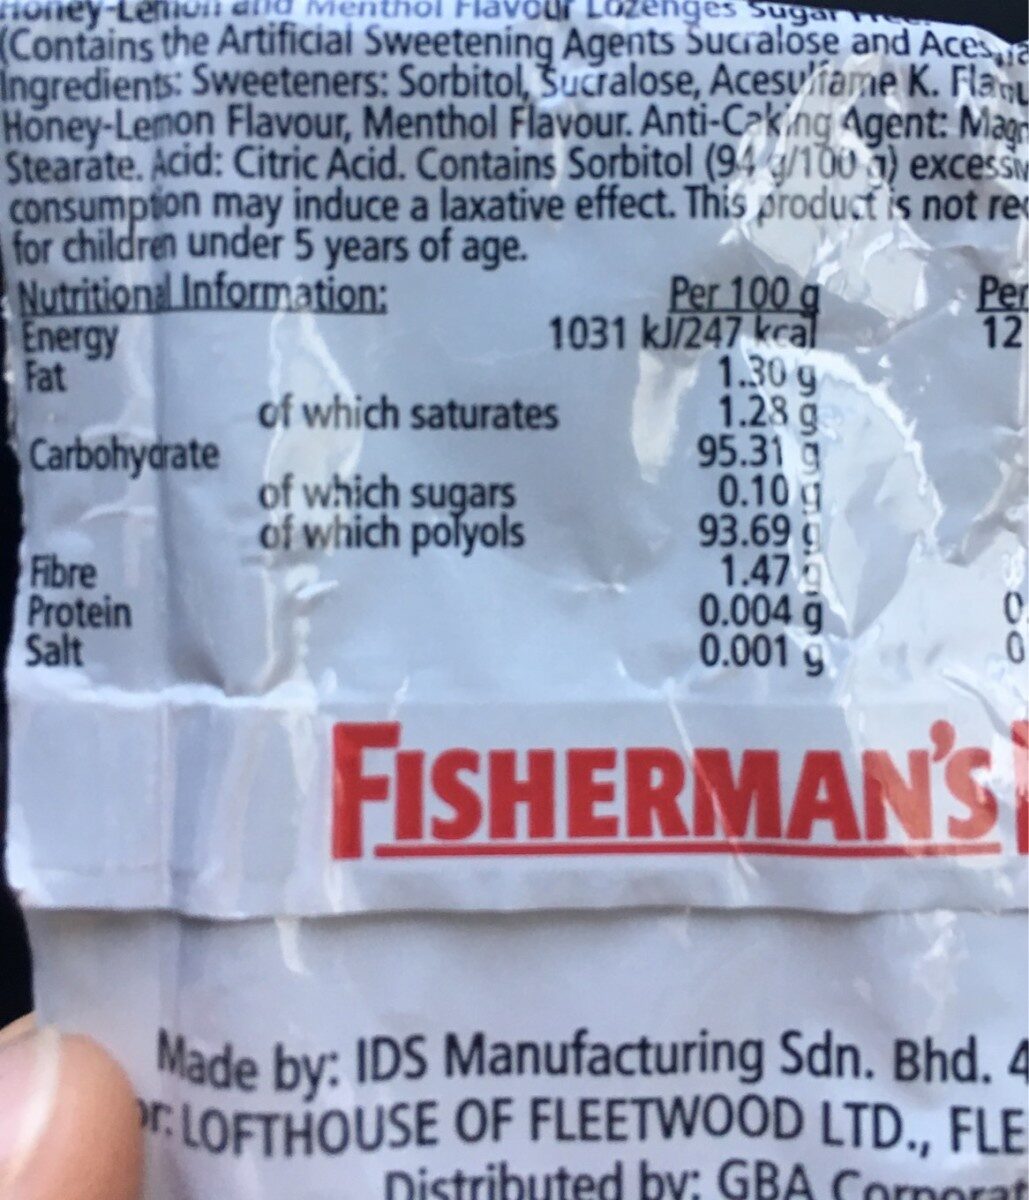 Fisherman's friend - Tableau nutritionnel